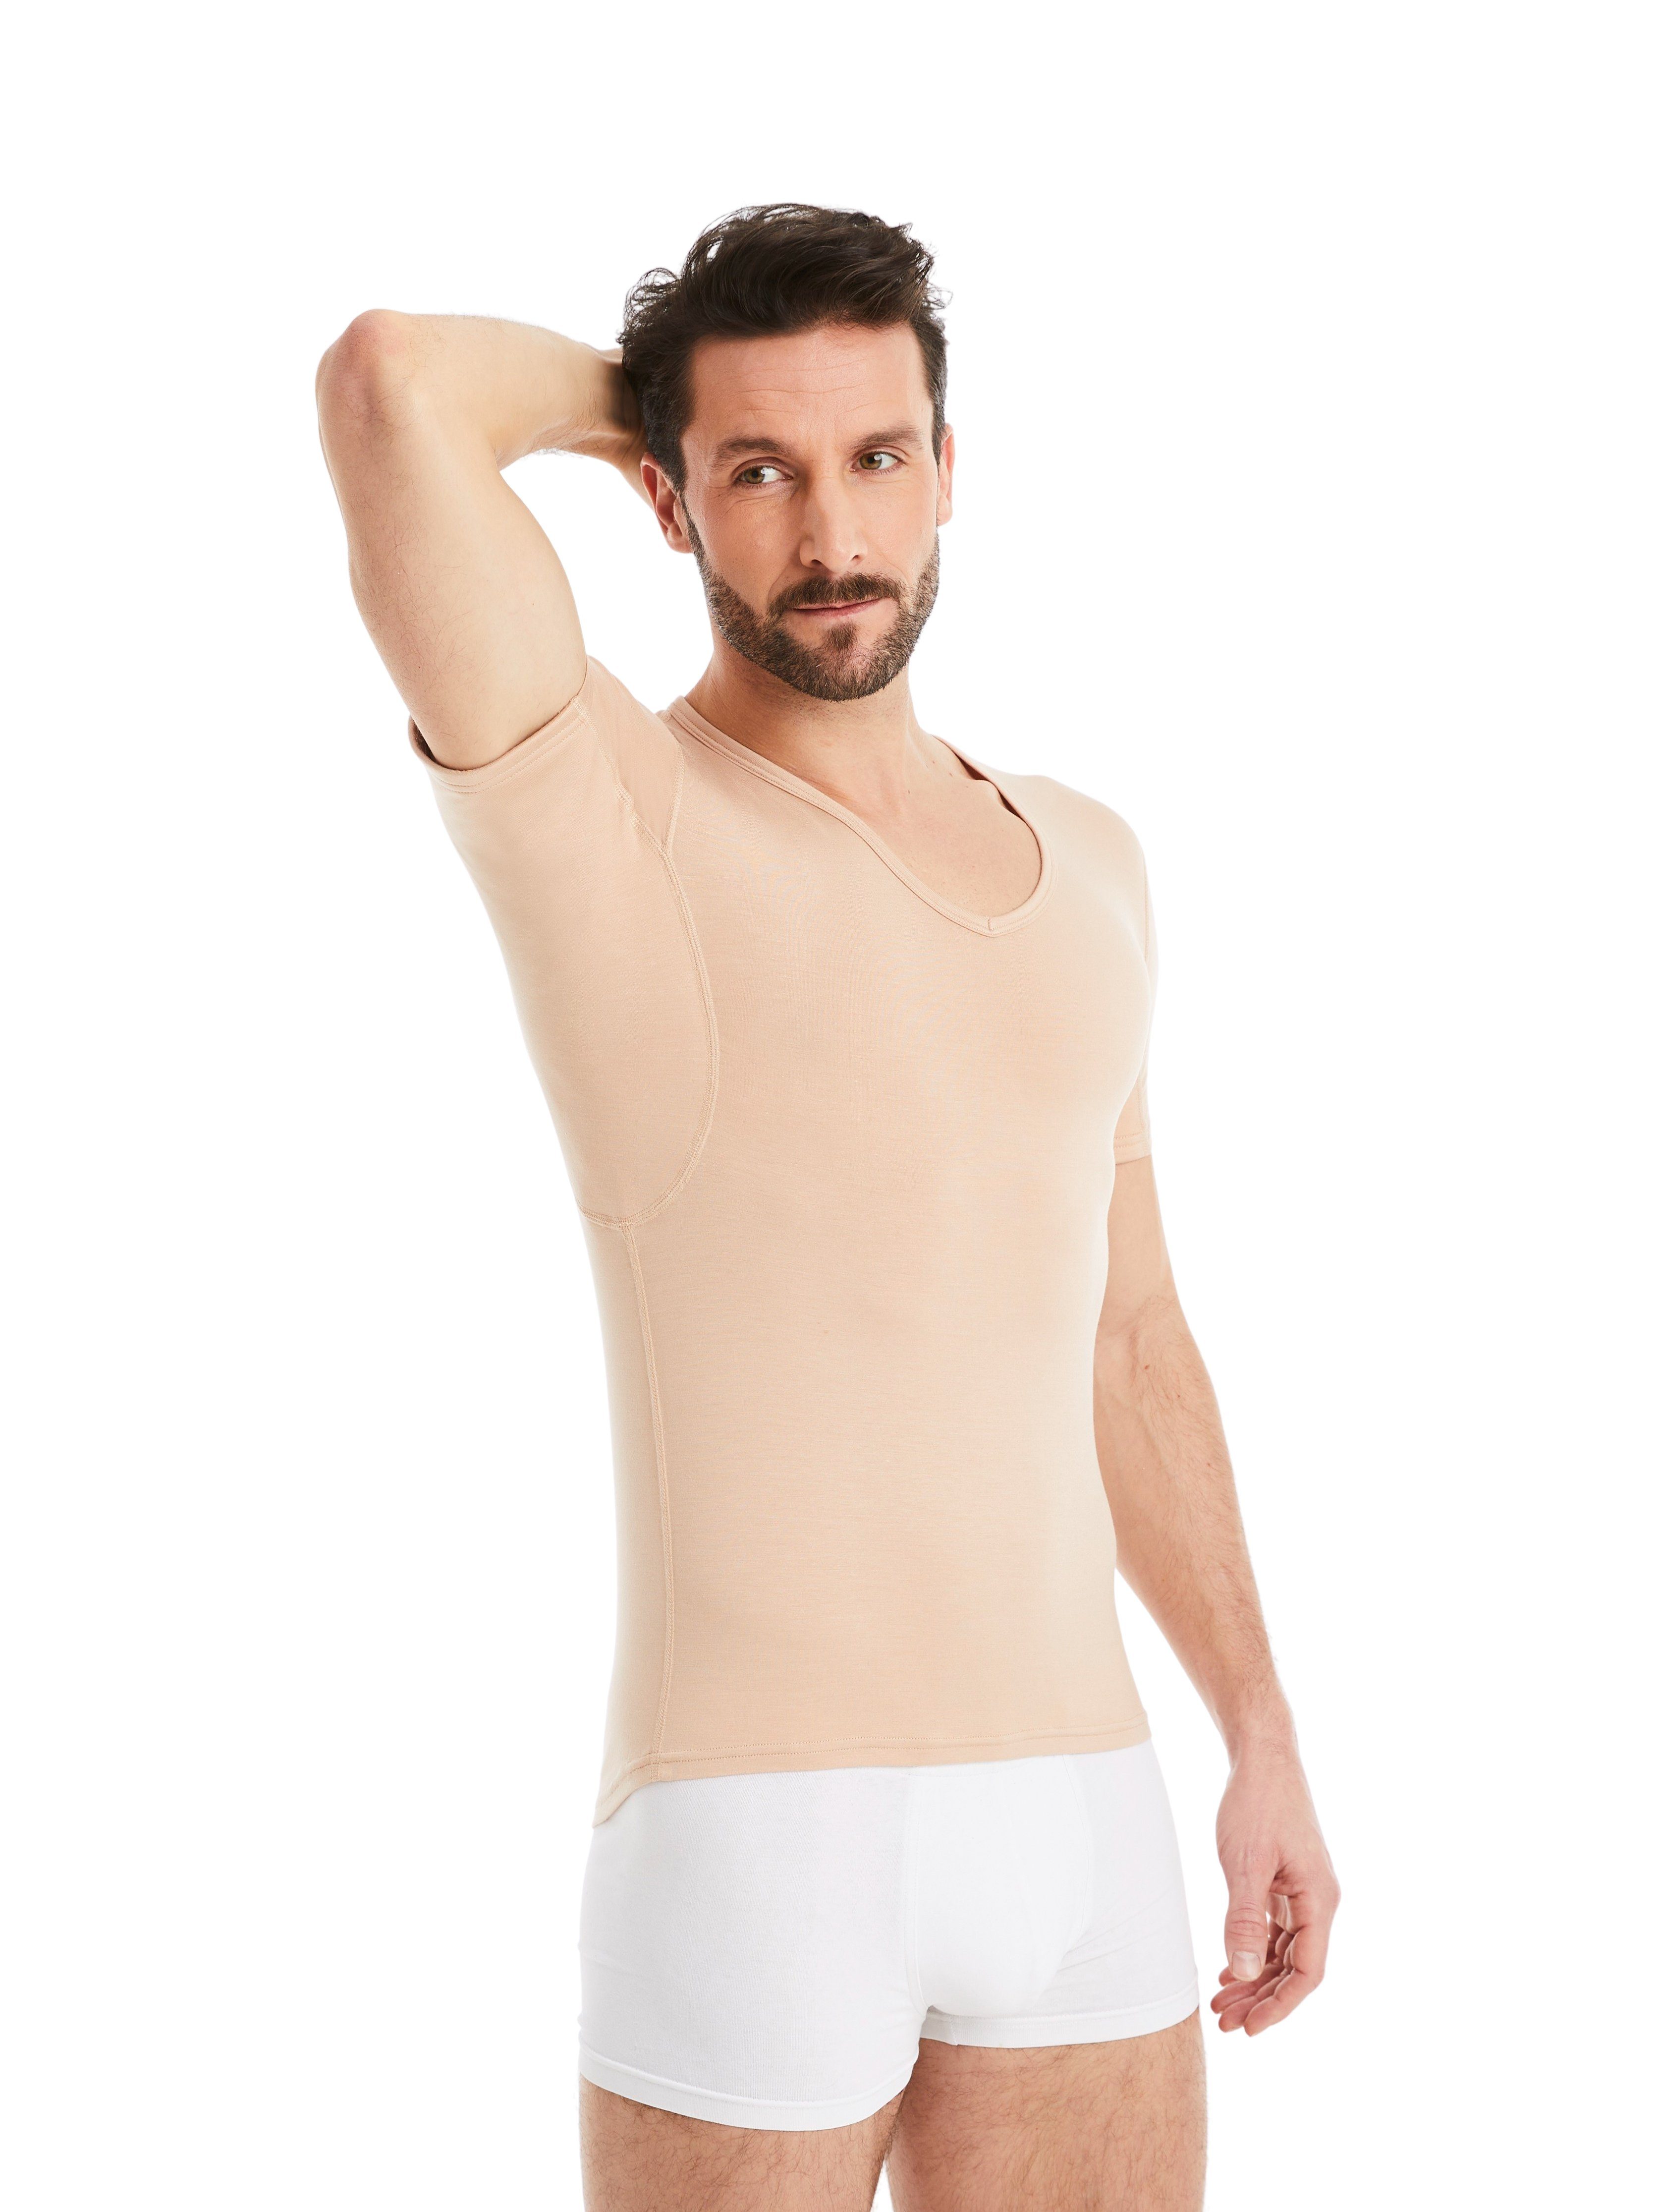 FINN Design Unterhemd Schweißflecken, vor Wirkung Light-Beige Schutz 100% Herren garantierte Anti-Schweiß Unterhemd